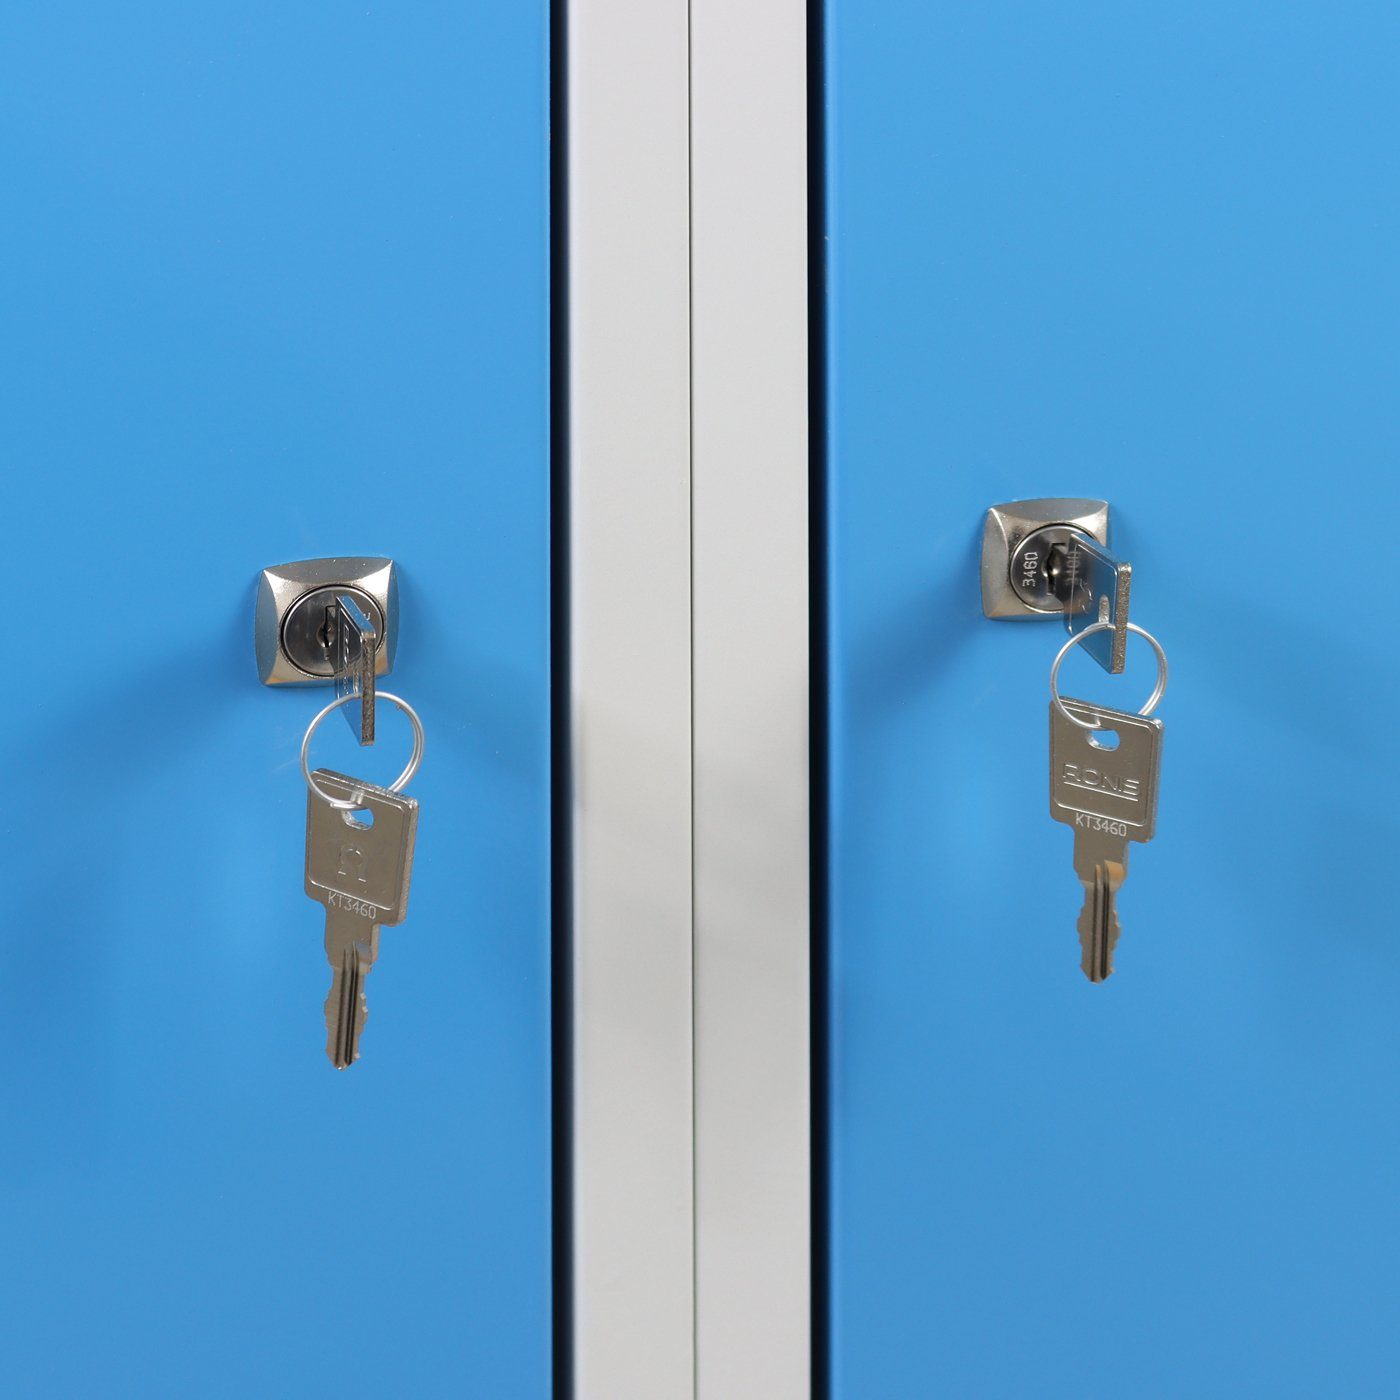 mit Grau/Blau + PROREGAL® Werkbank Ablagefläche Werkbank Lichtblau 2 Rhino Türen,